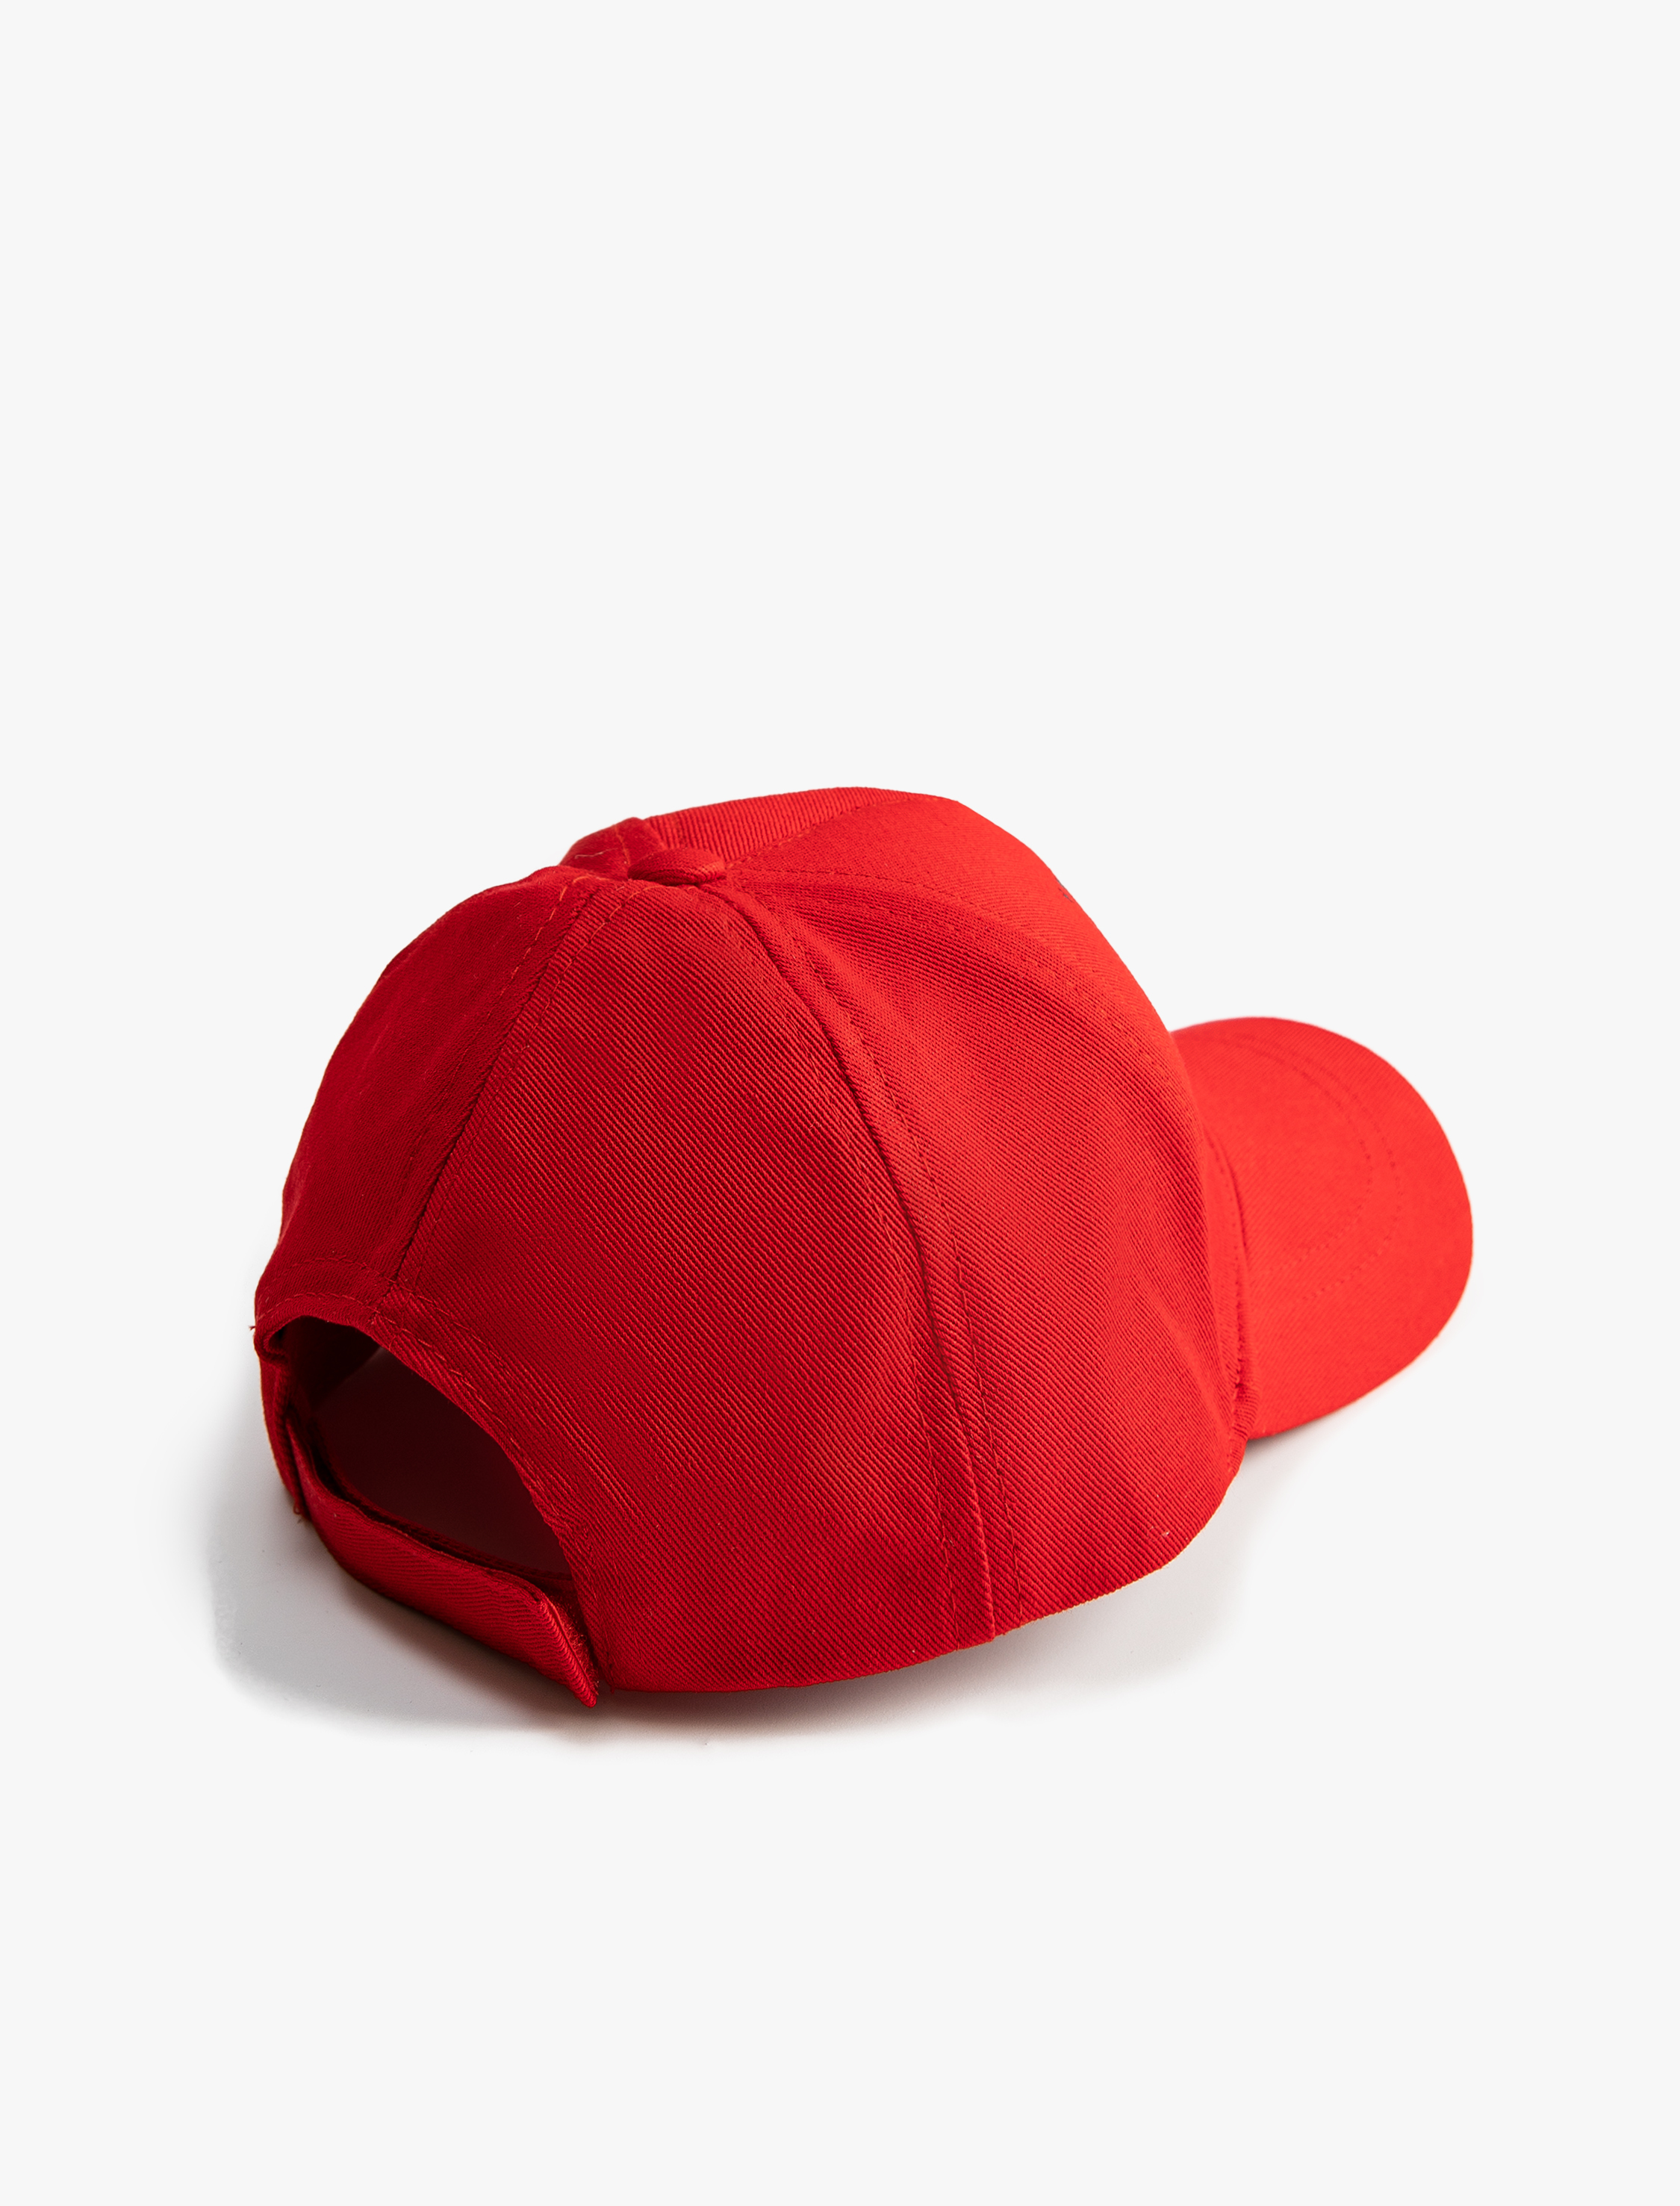 Koton / Kız Çocuk Şapka Cap Pamuklu Baskılı 100. Yıla Özel. 3